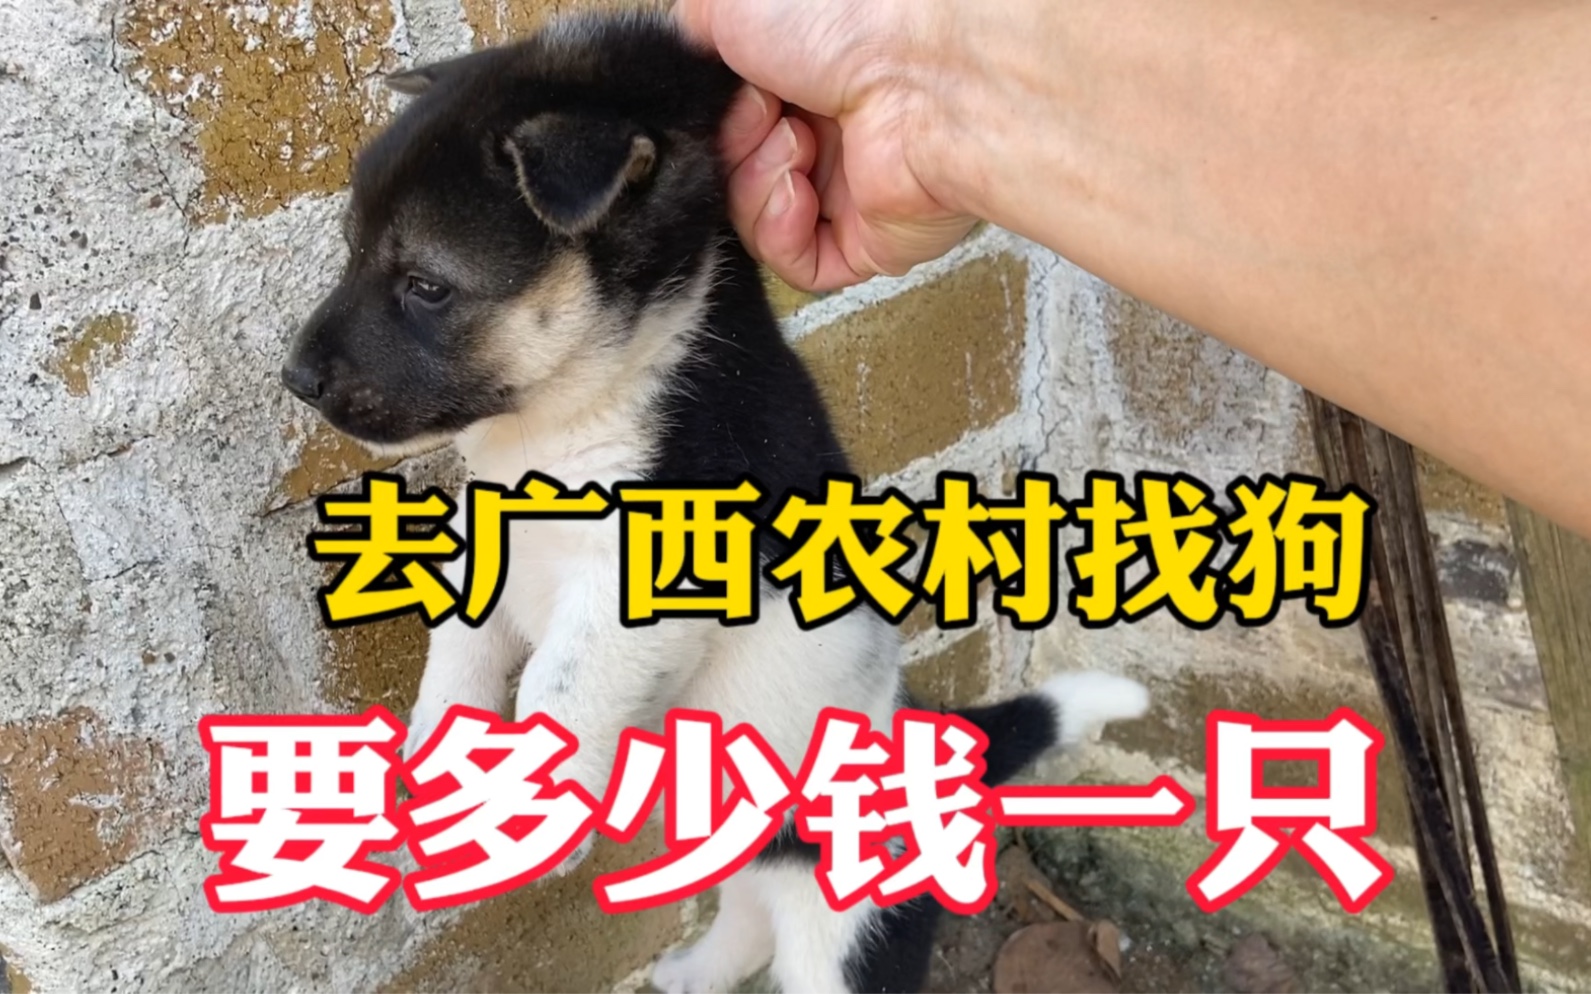 广西农村土狗多,在农村买一只狗要多少钱?